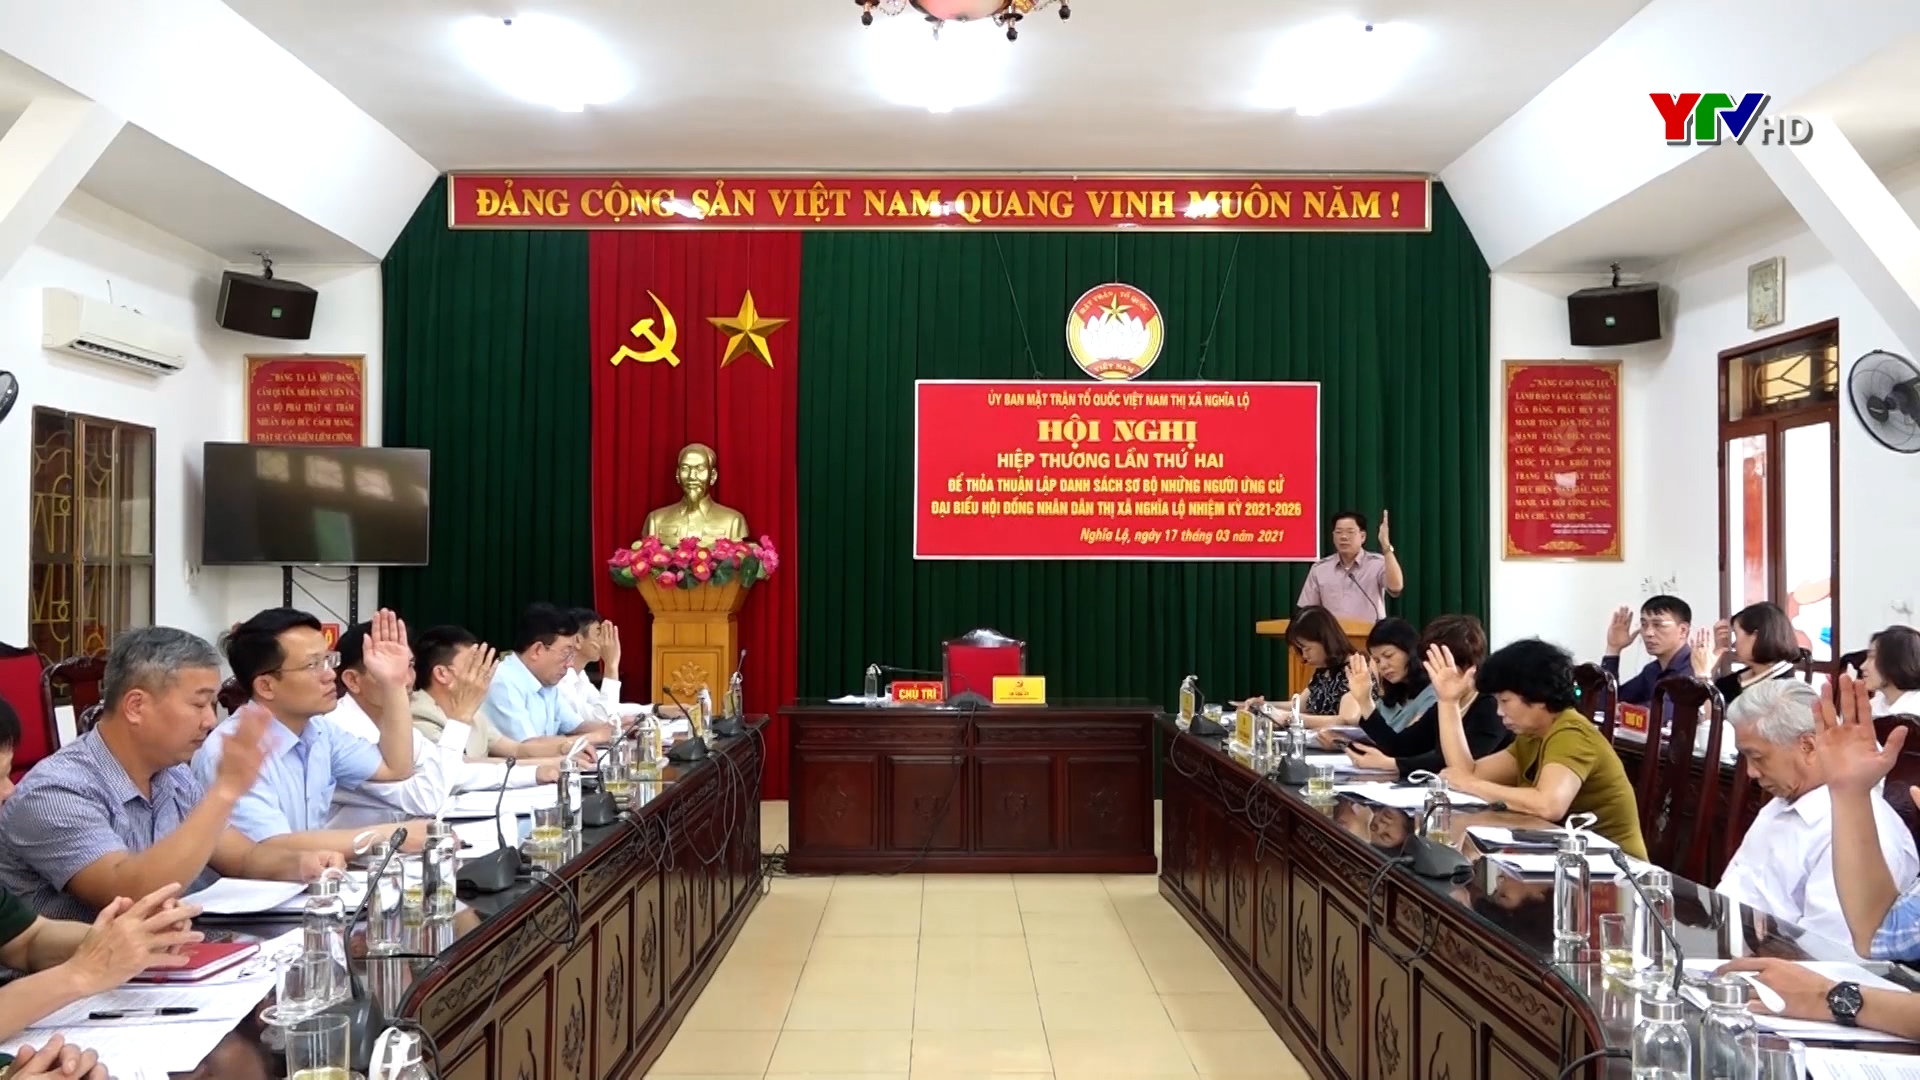 Ủy ban MTTQ thị xã Nghĩa Lộ tổ chức Hội nghị hiệp thương lần thứ hai